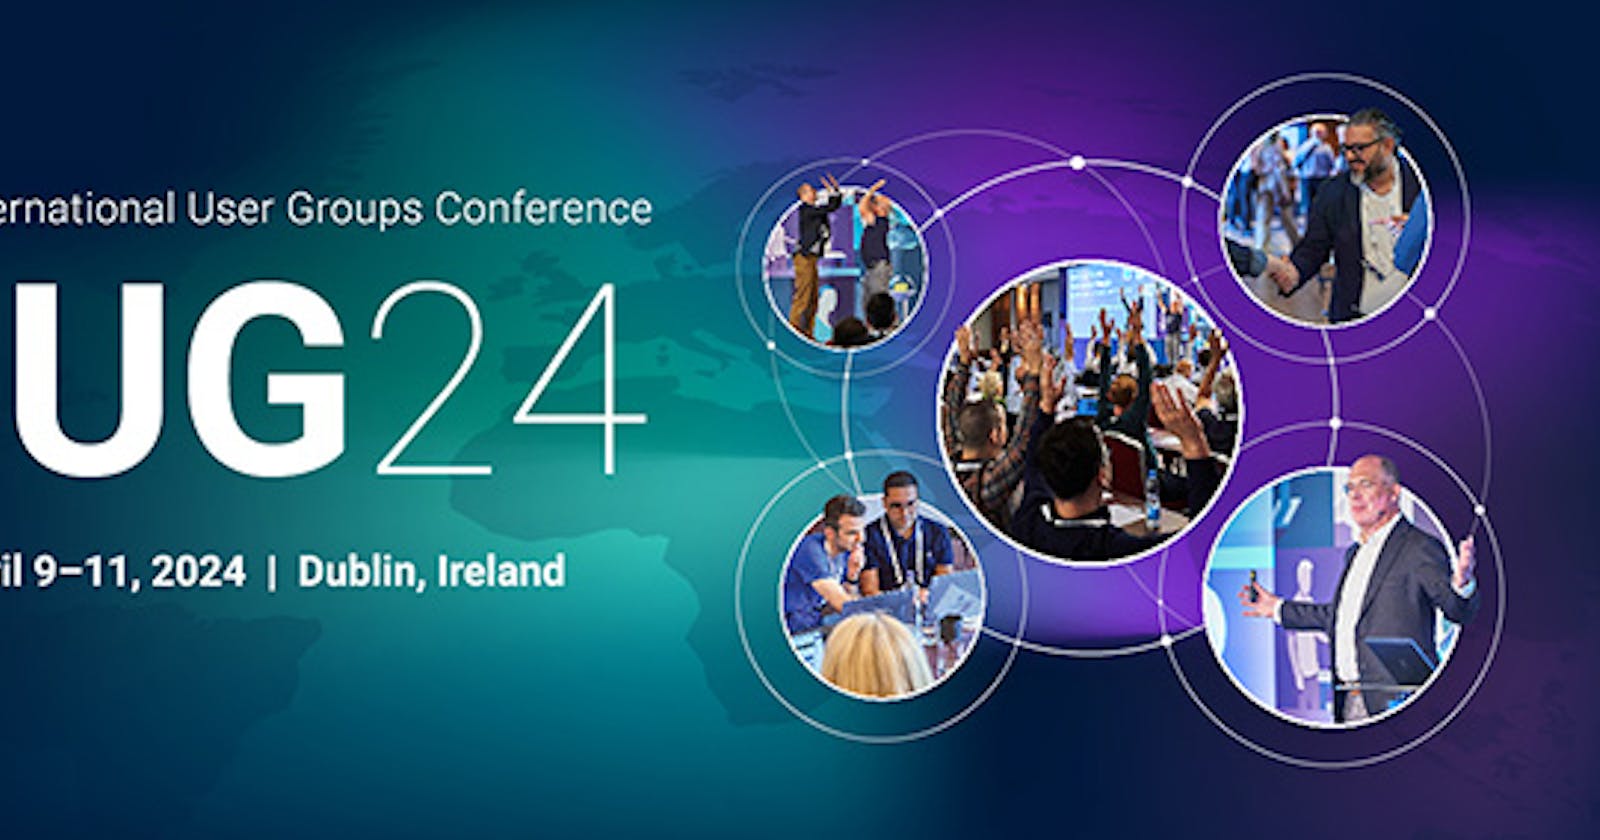 IUG Conference 2024 – Explore the Agenda